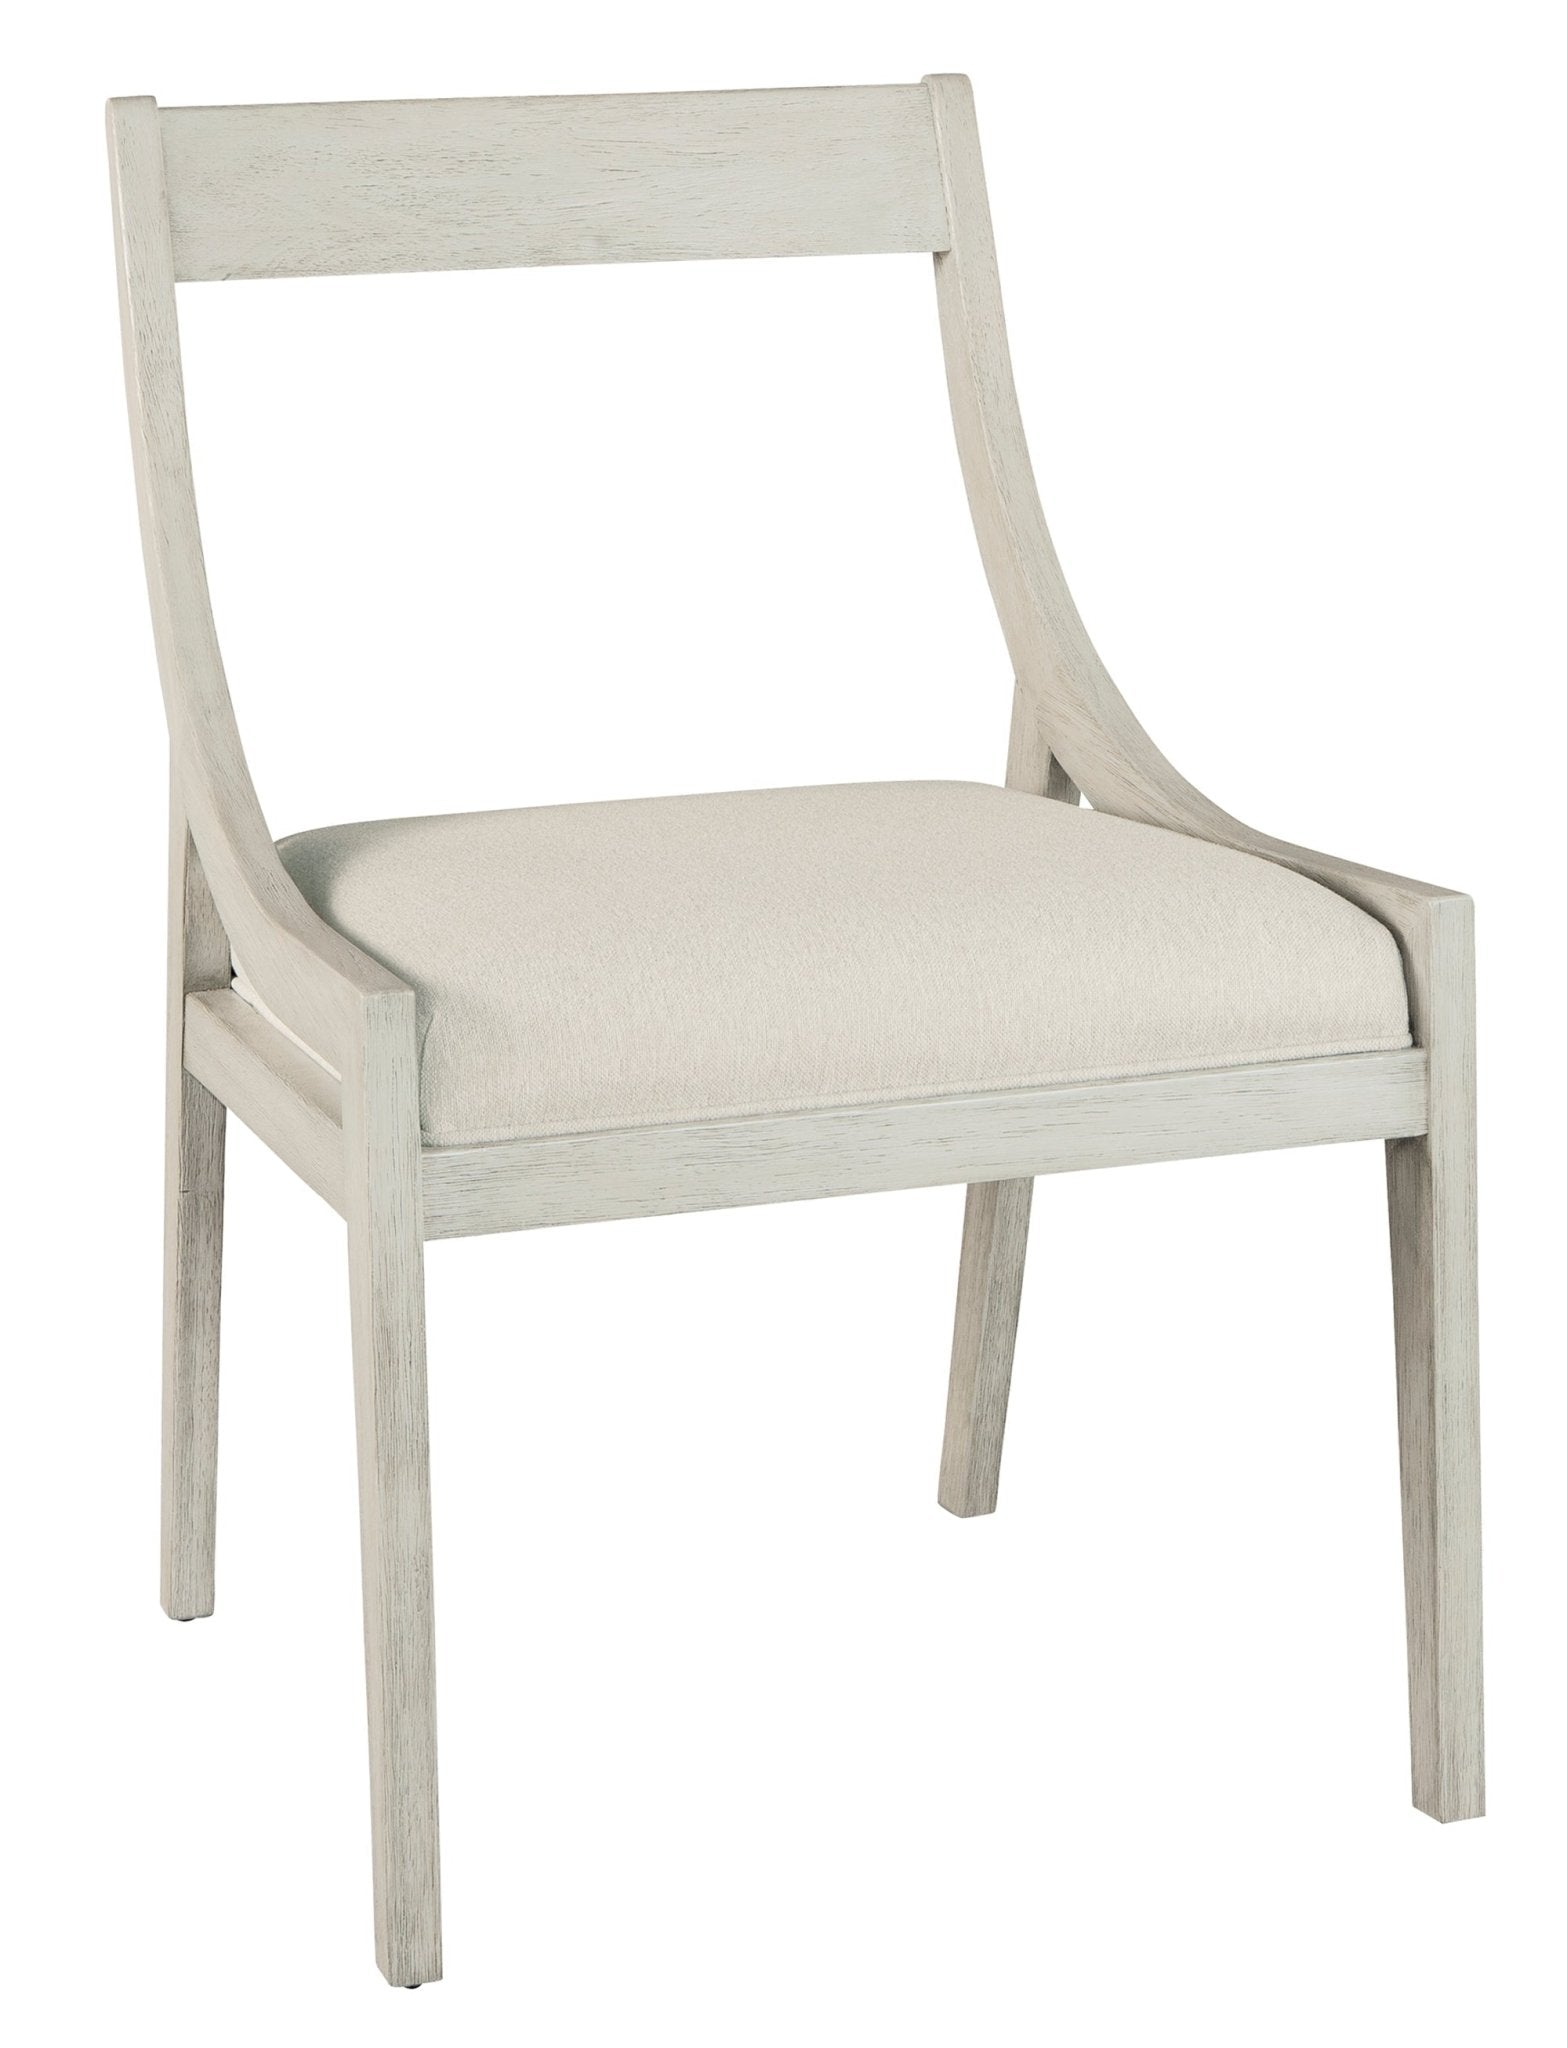 Sierra Heights Sling Arm Chair - Furniture - Tipplergoods